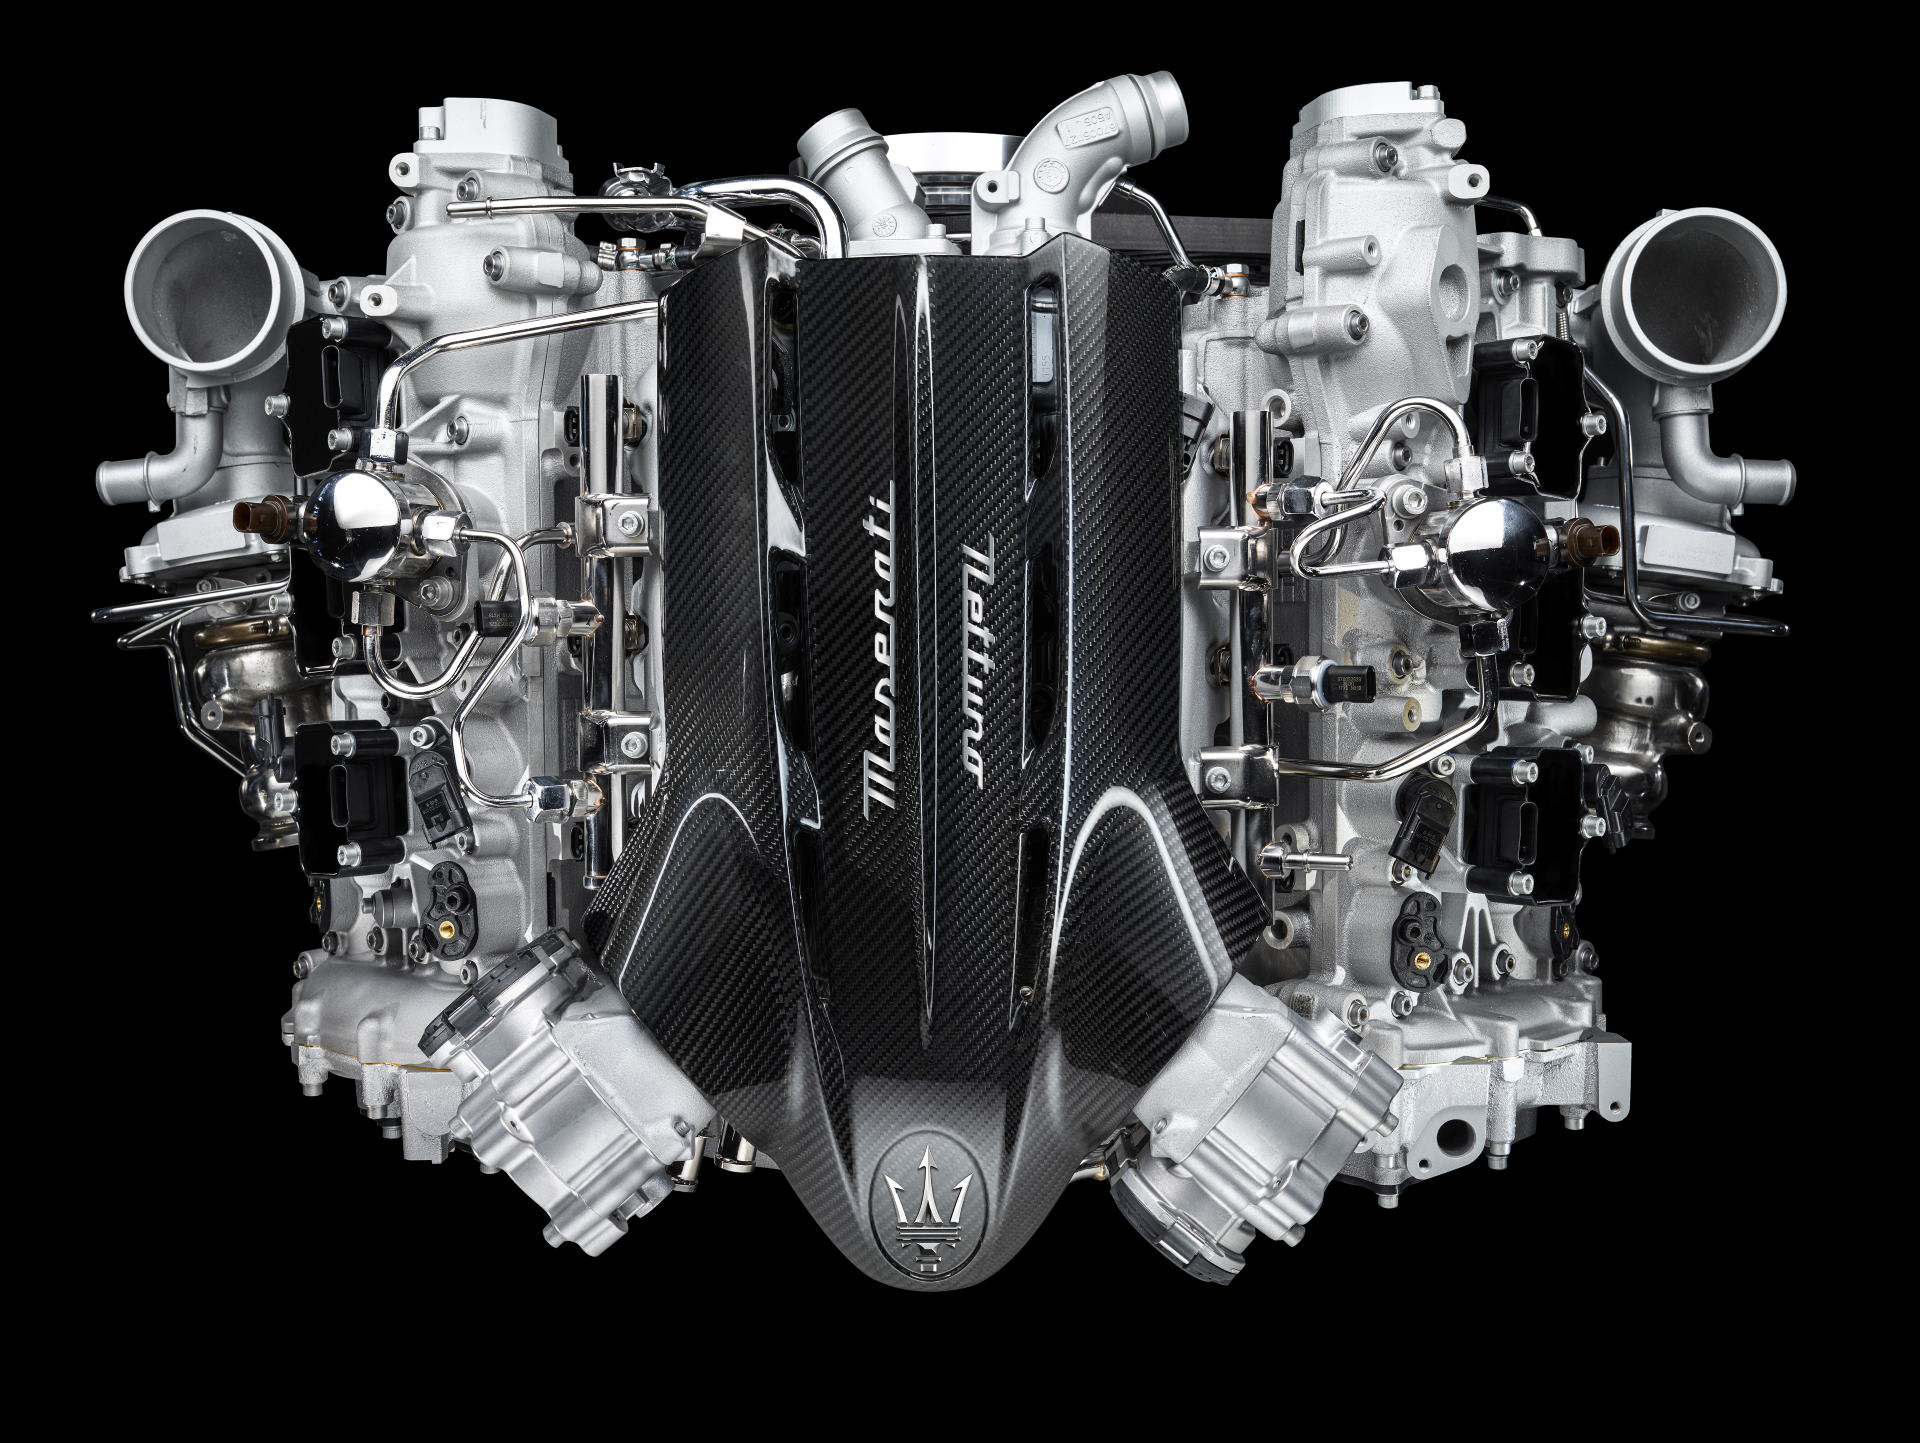 Nettuno engine.